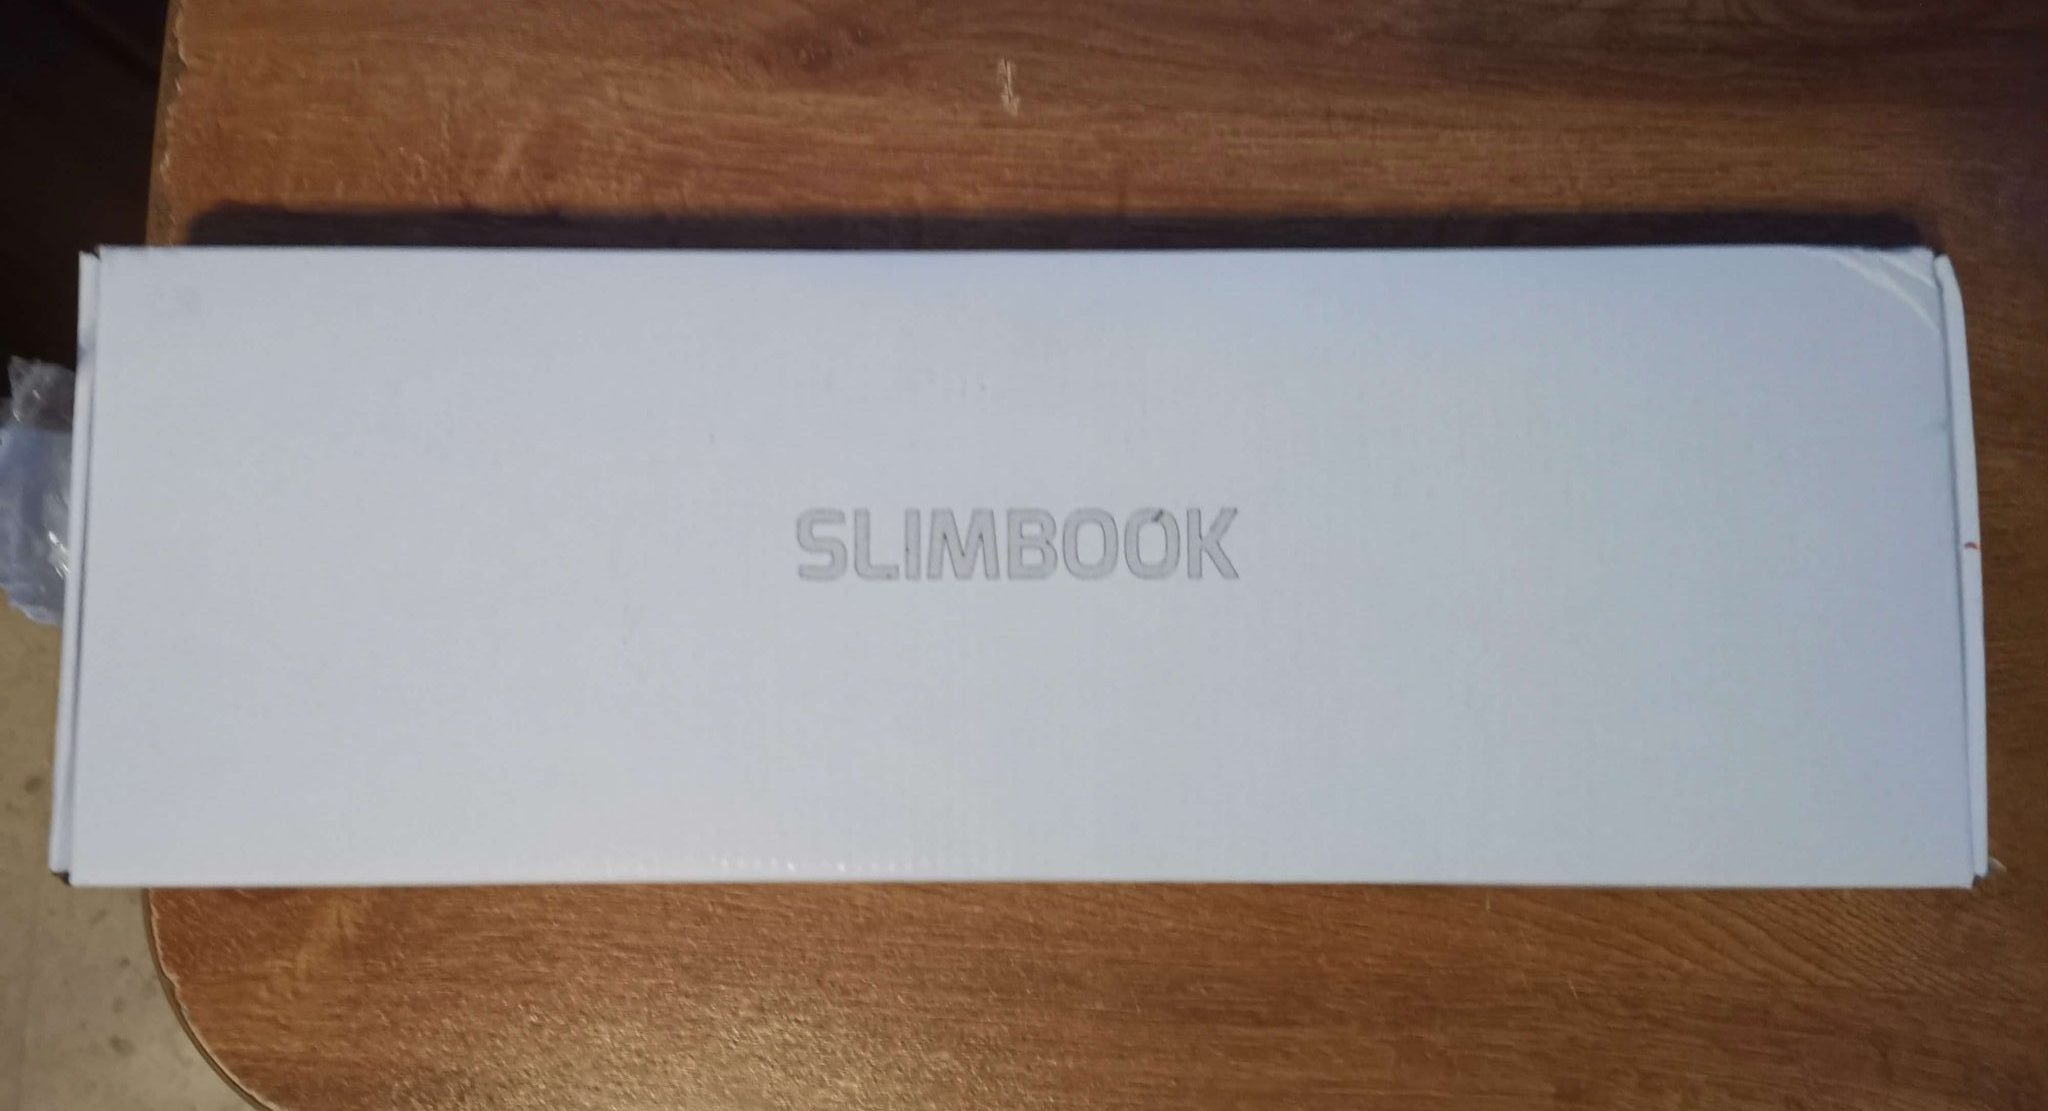 Teclado RGB Slimbook K83 – Review en Español